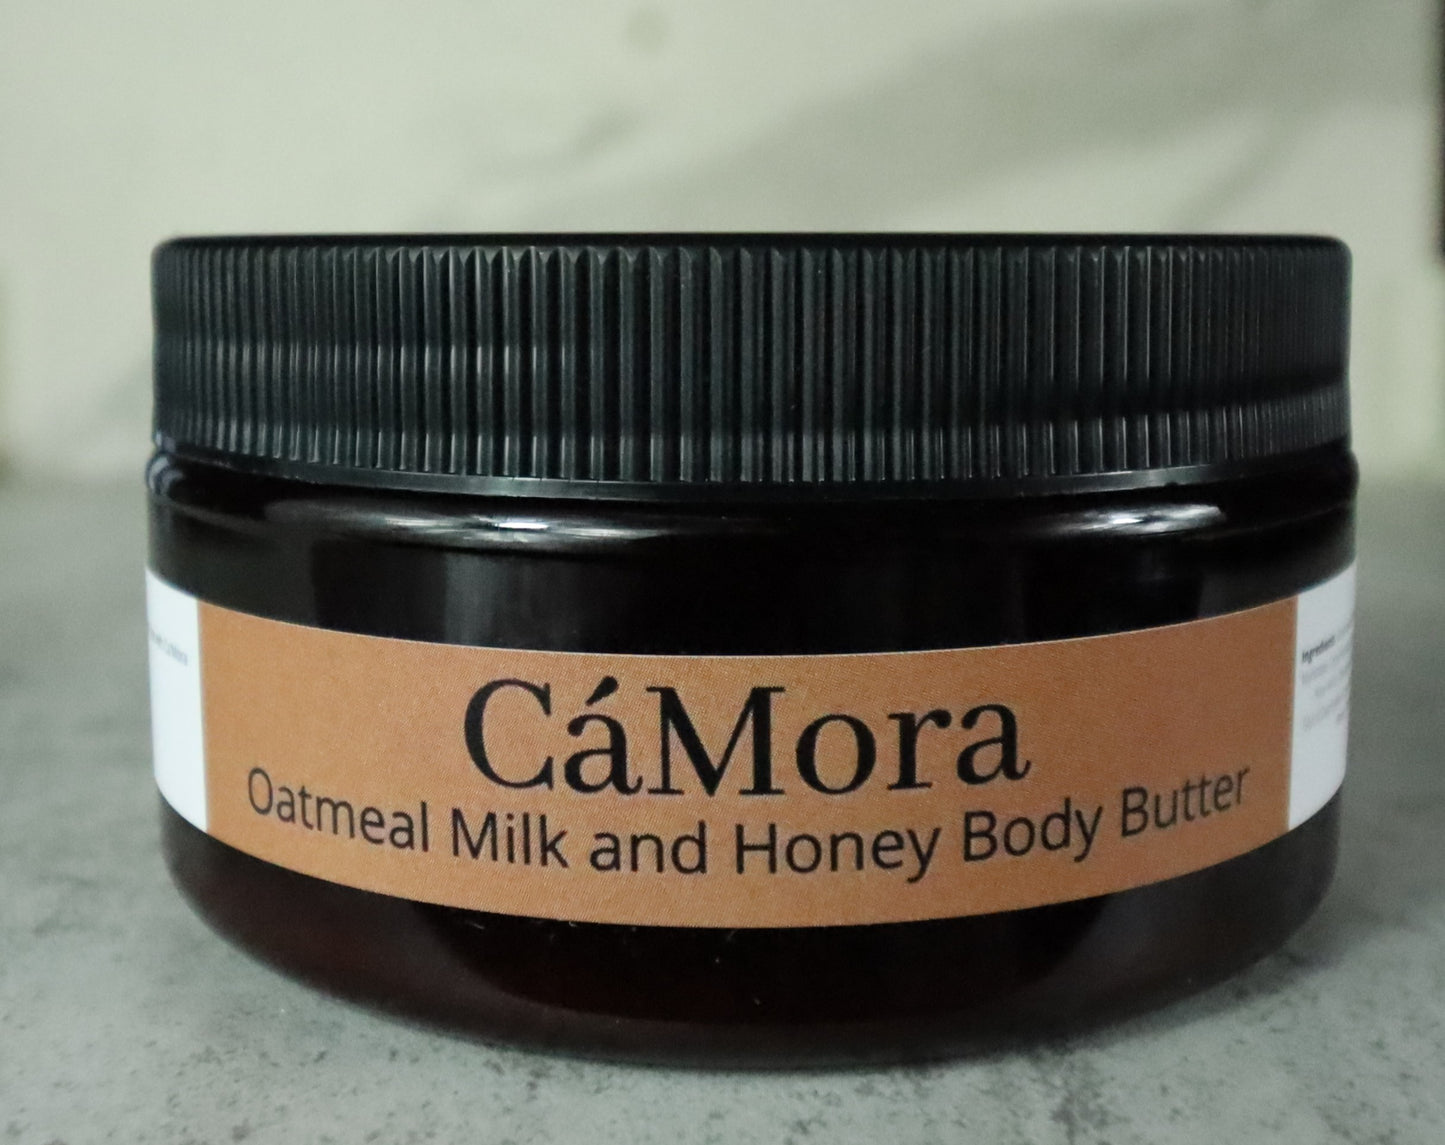 Ca'Mora Oatmeal Milk and Honey Body Butter for moisturized skin.